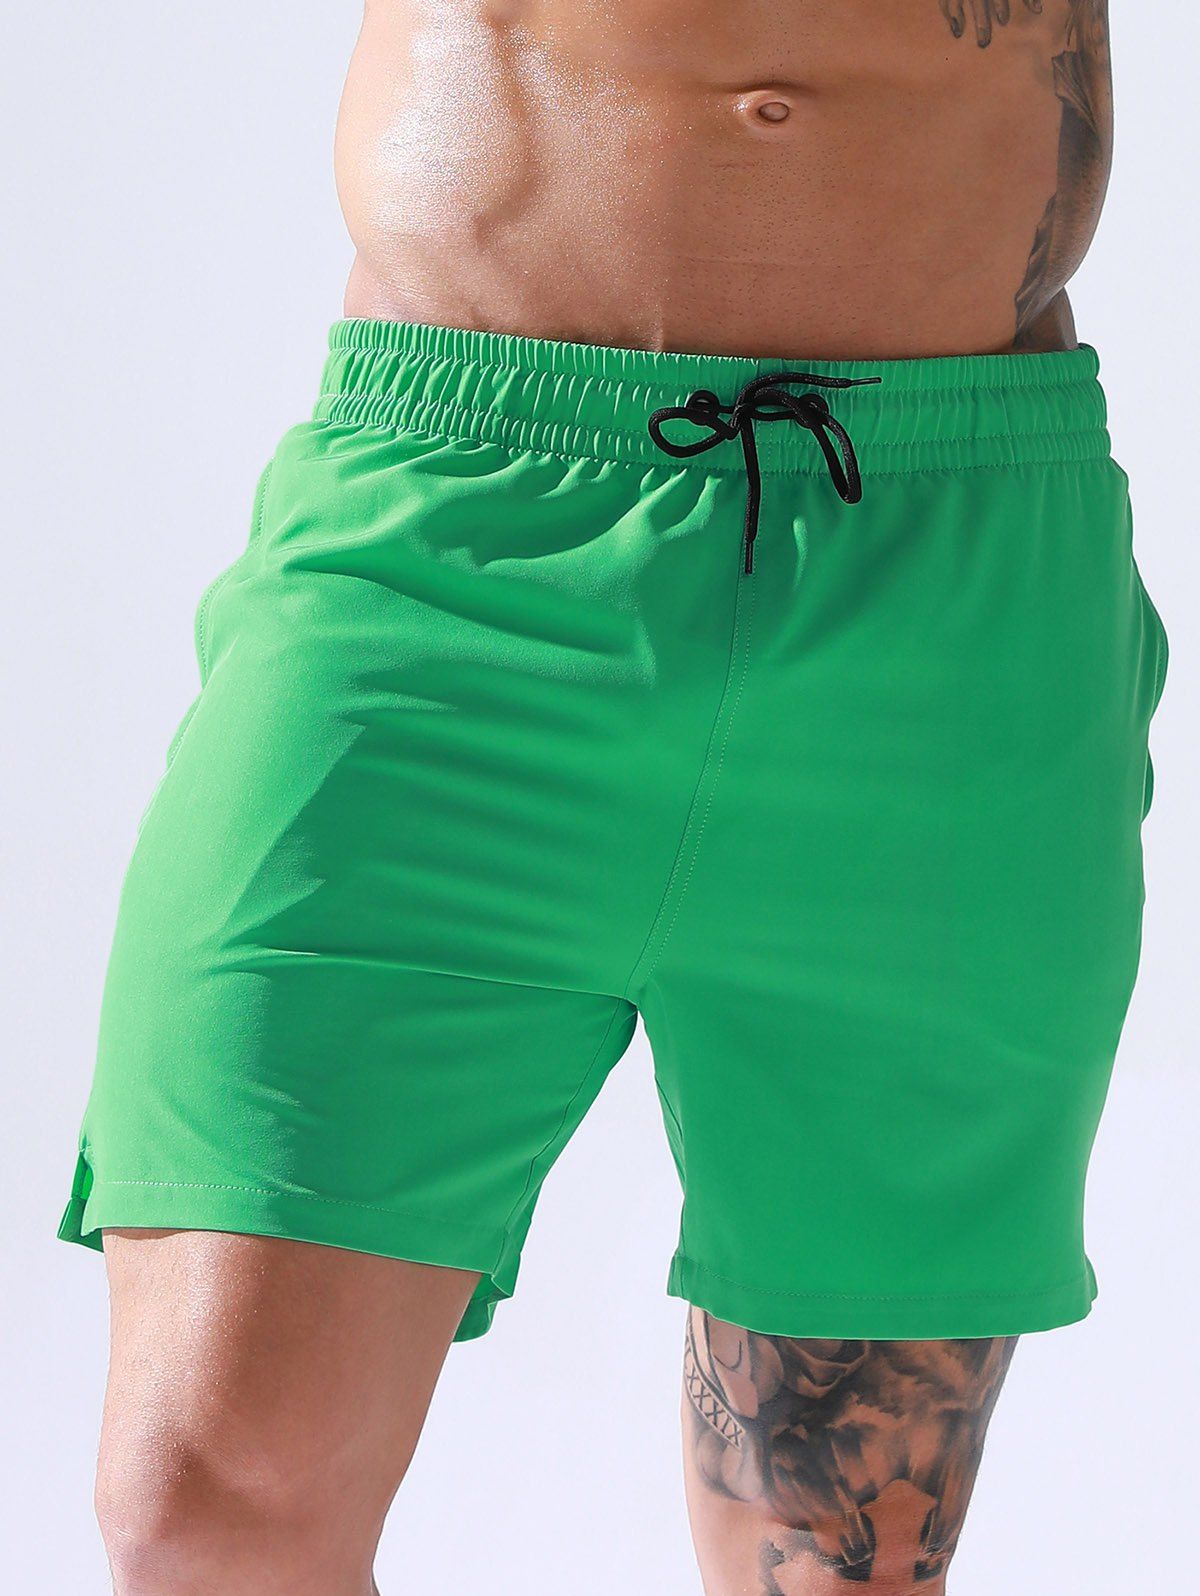 Vacation Casual Board Shorts Drawstrings Solid Color Pockets Summer Beach Shorts - GREEN XL